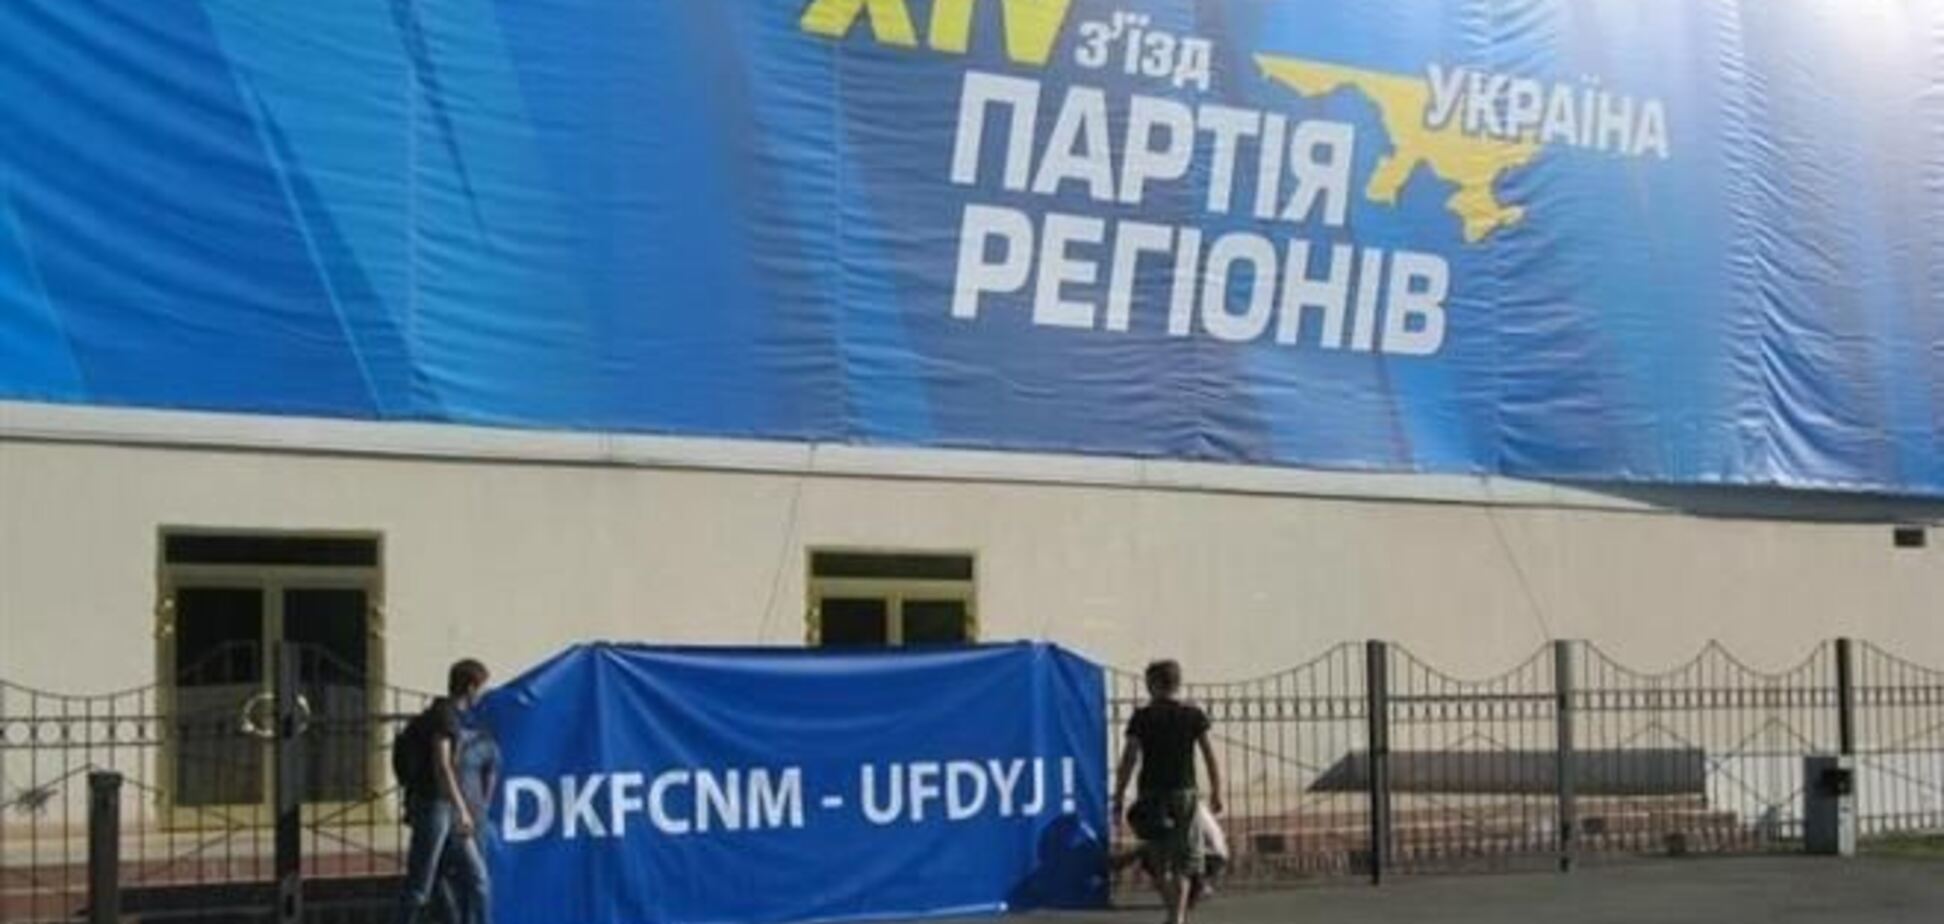 Партія регіонів скликає з'їзд на 15 березня в Донецьку